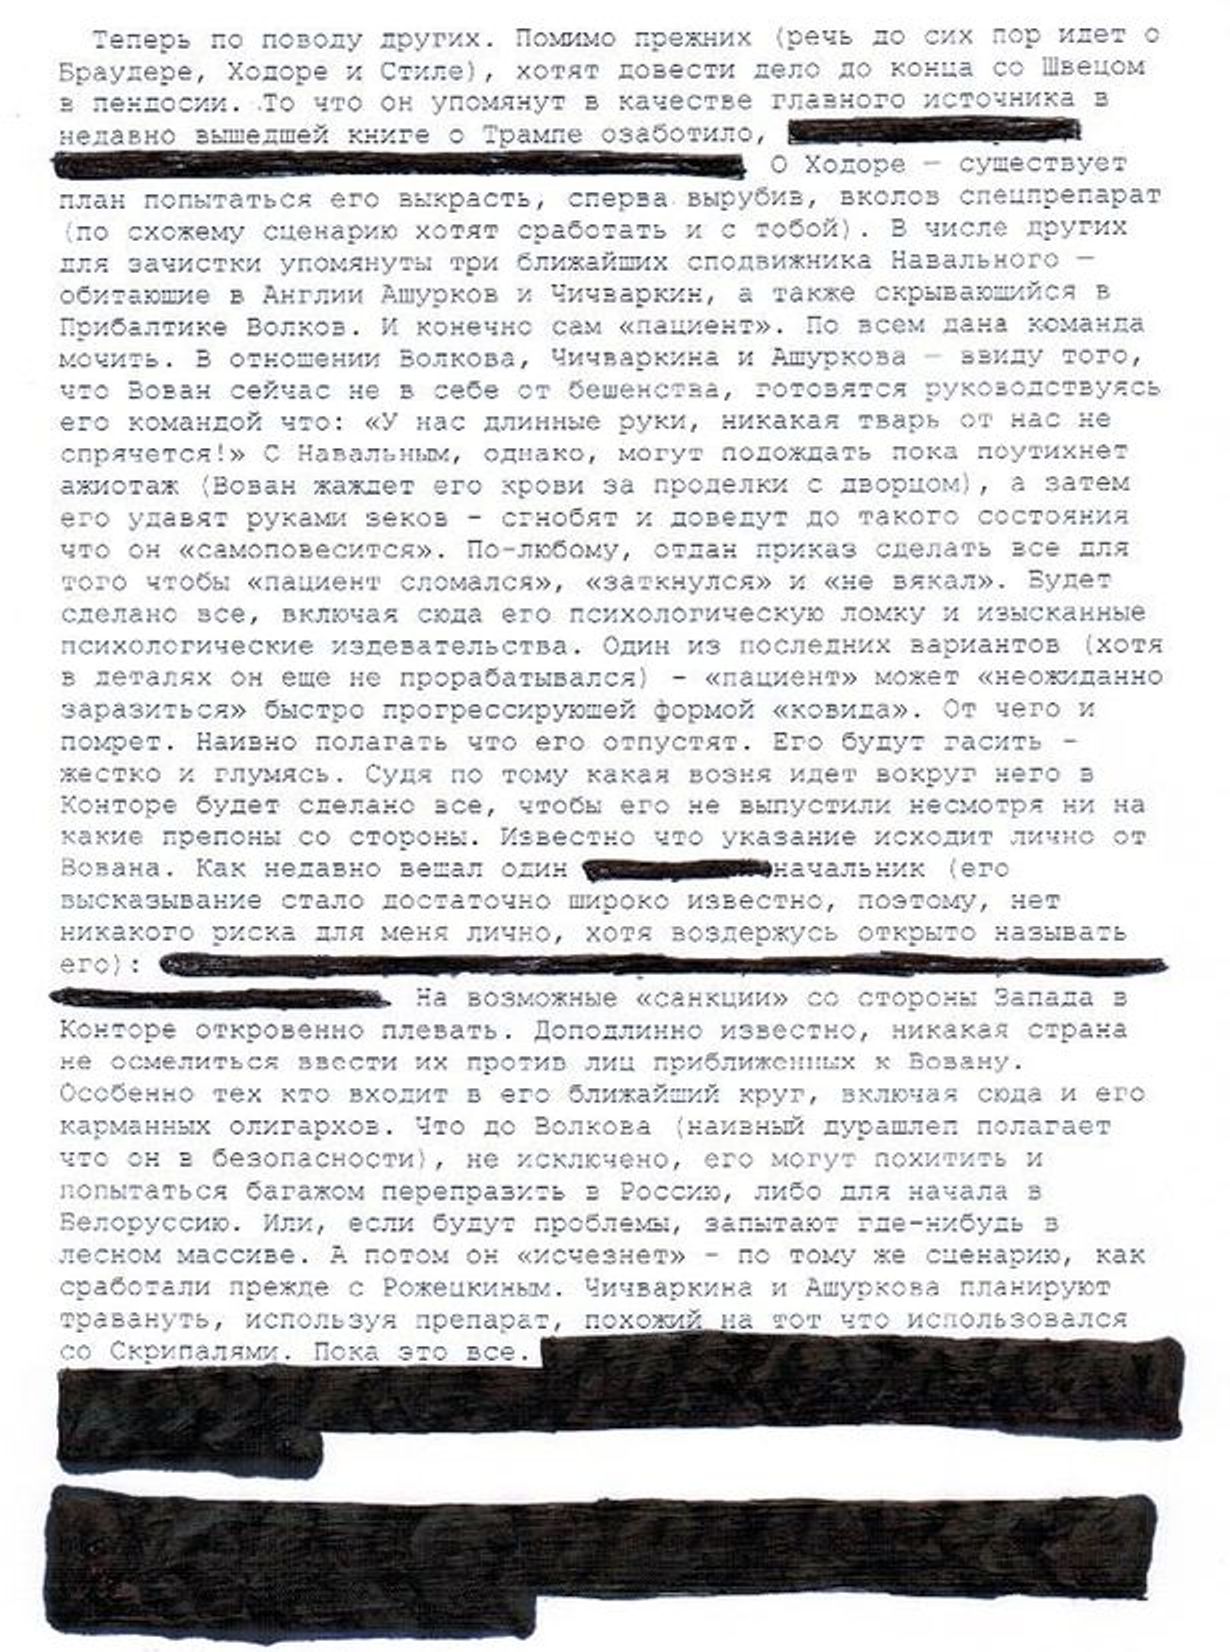 РІА «Новости» оголосило фейком лист про затверджений Путіним списку жертв на підставі орфографічною помилки